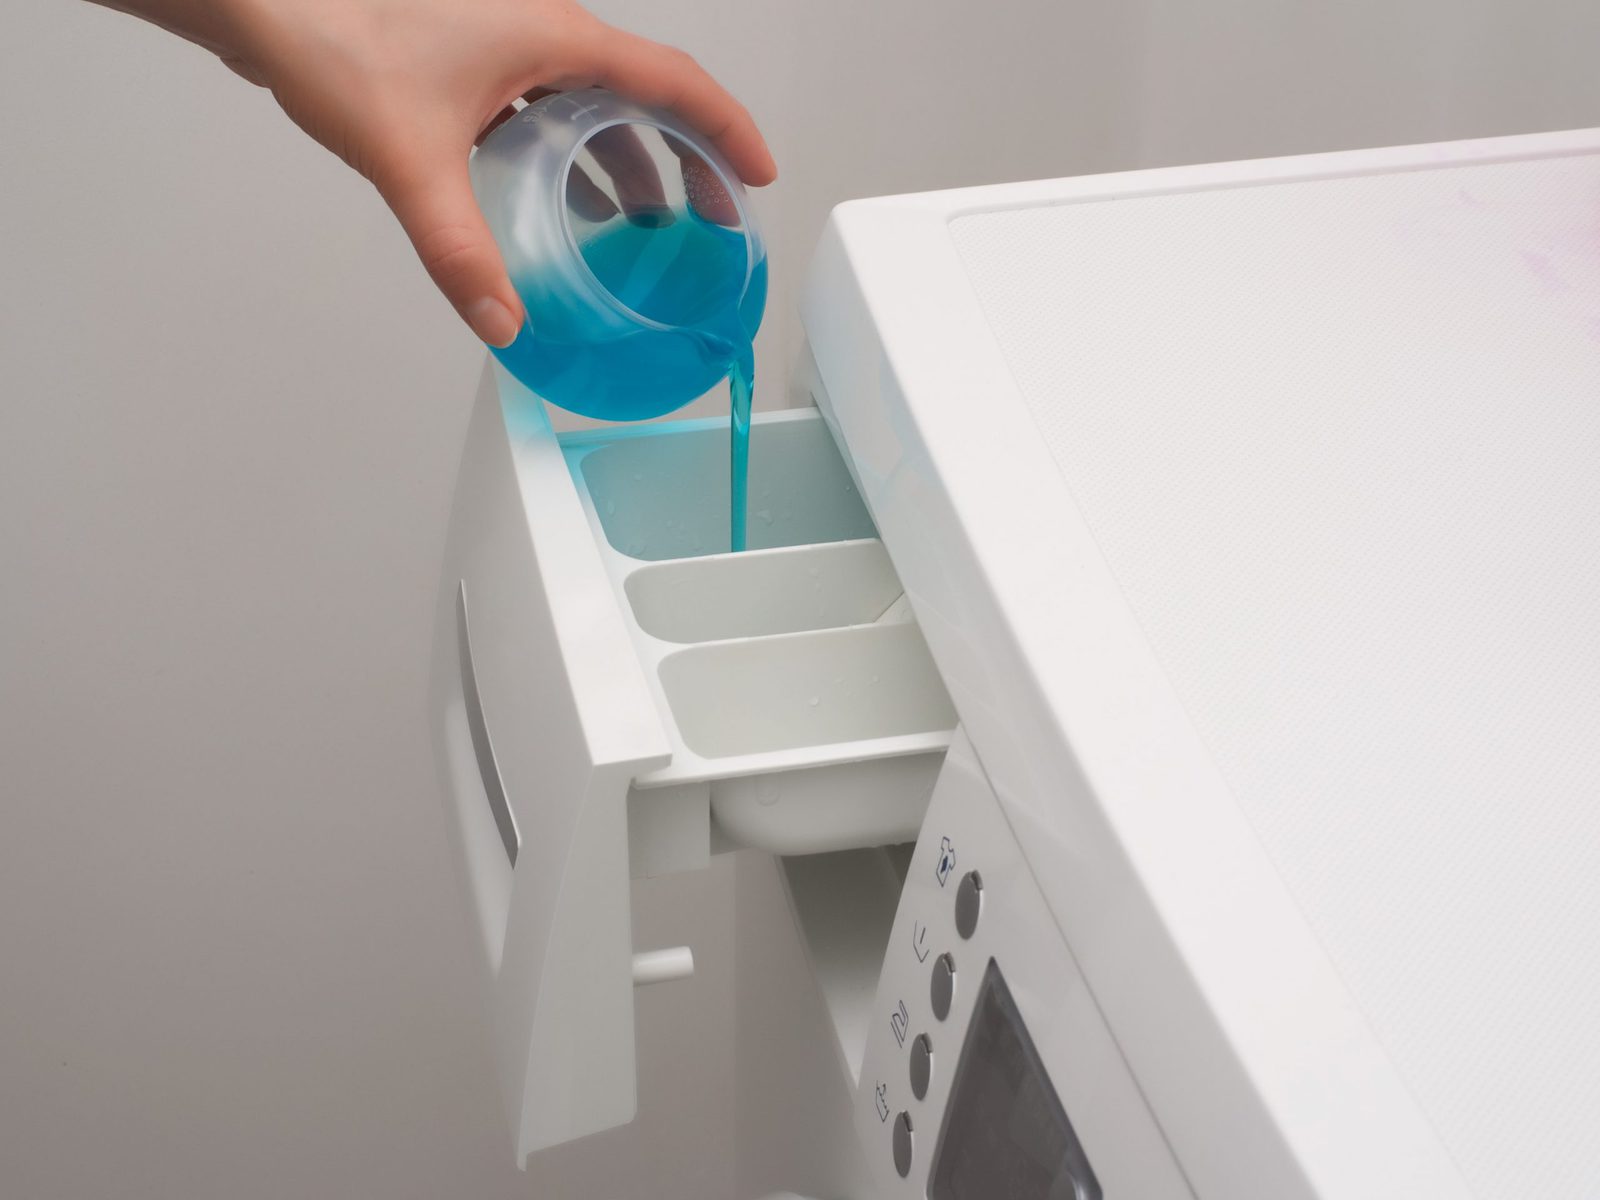 Sıvı deterjan ve toz deterjan arasındaki farklar nelerdir?